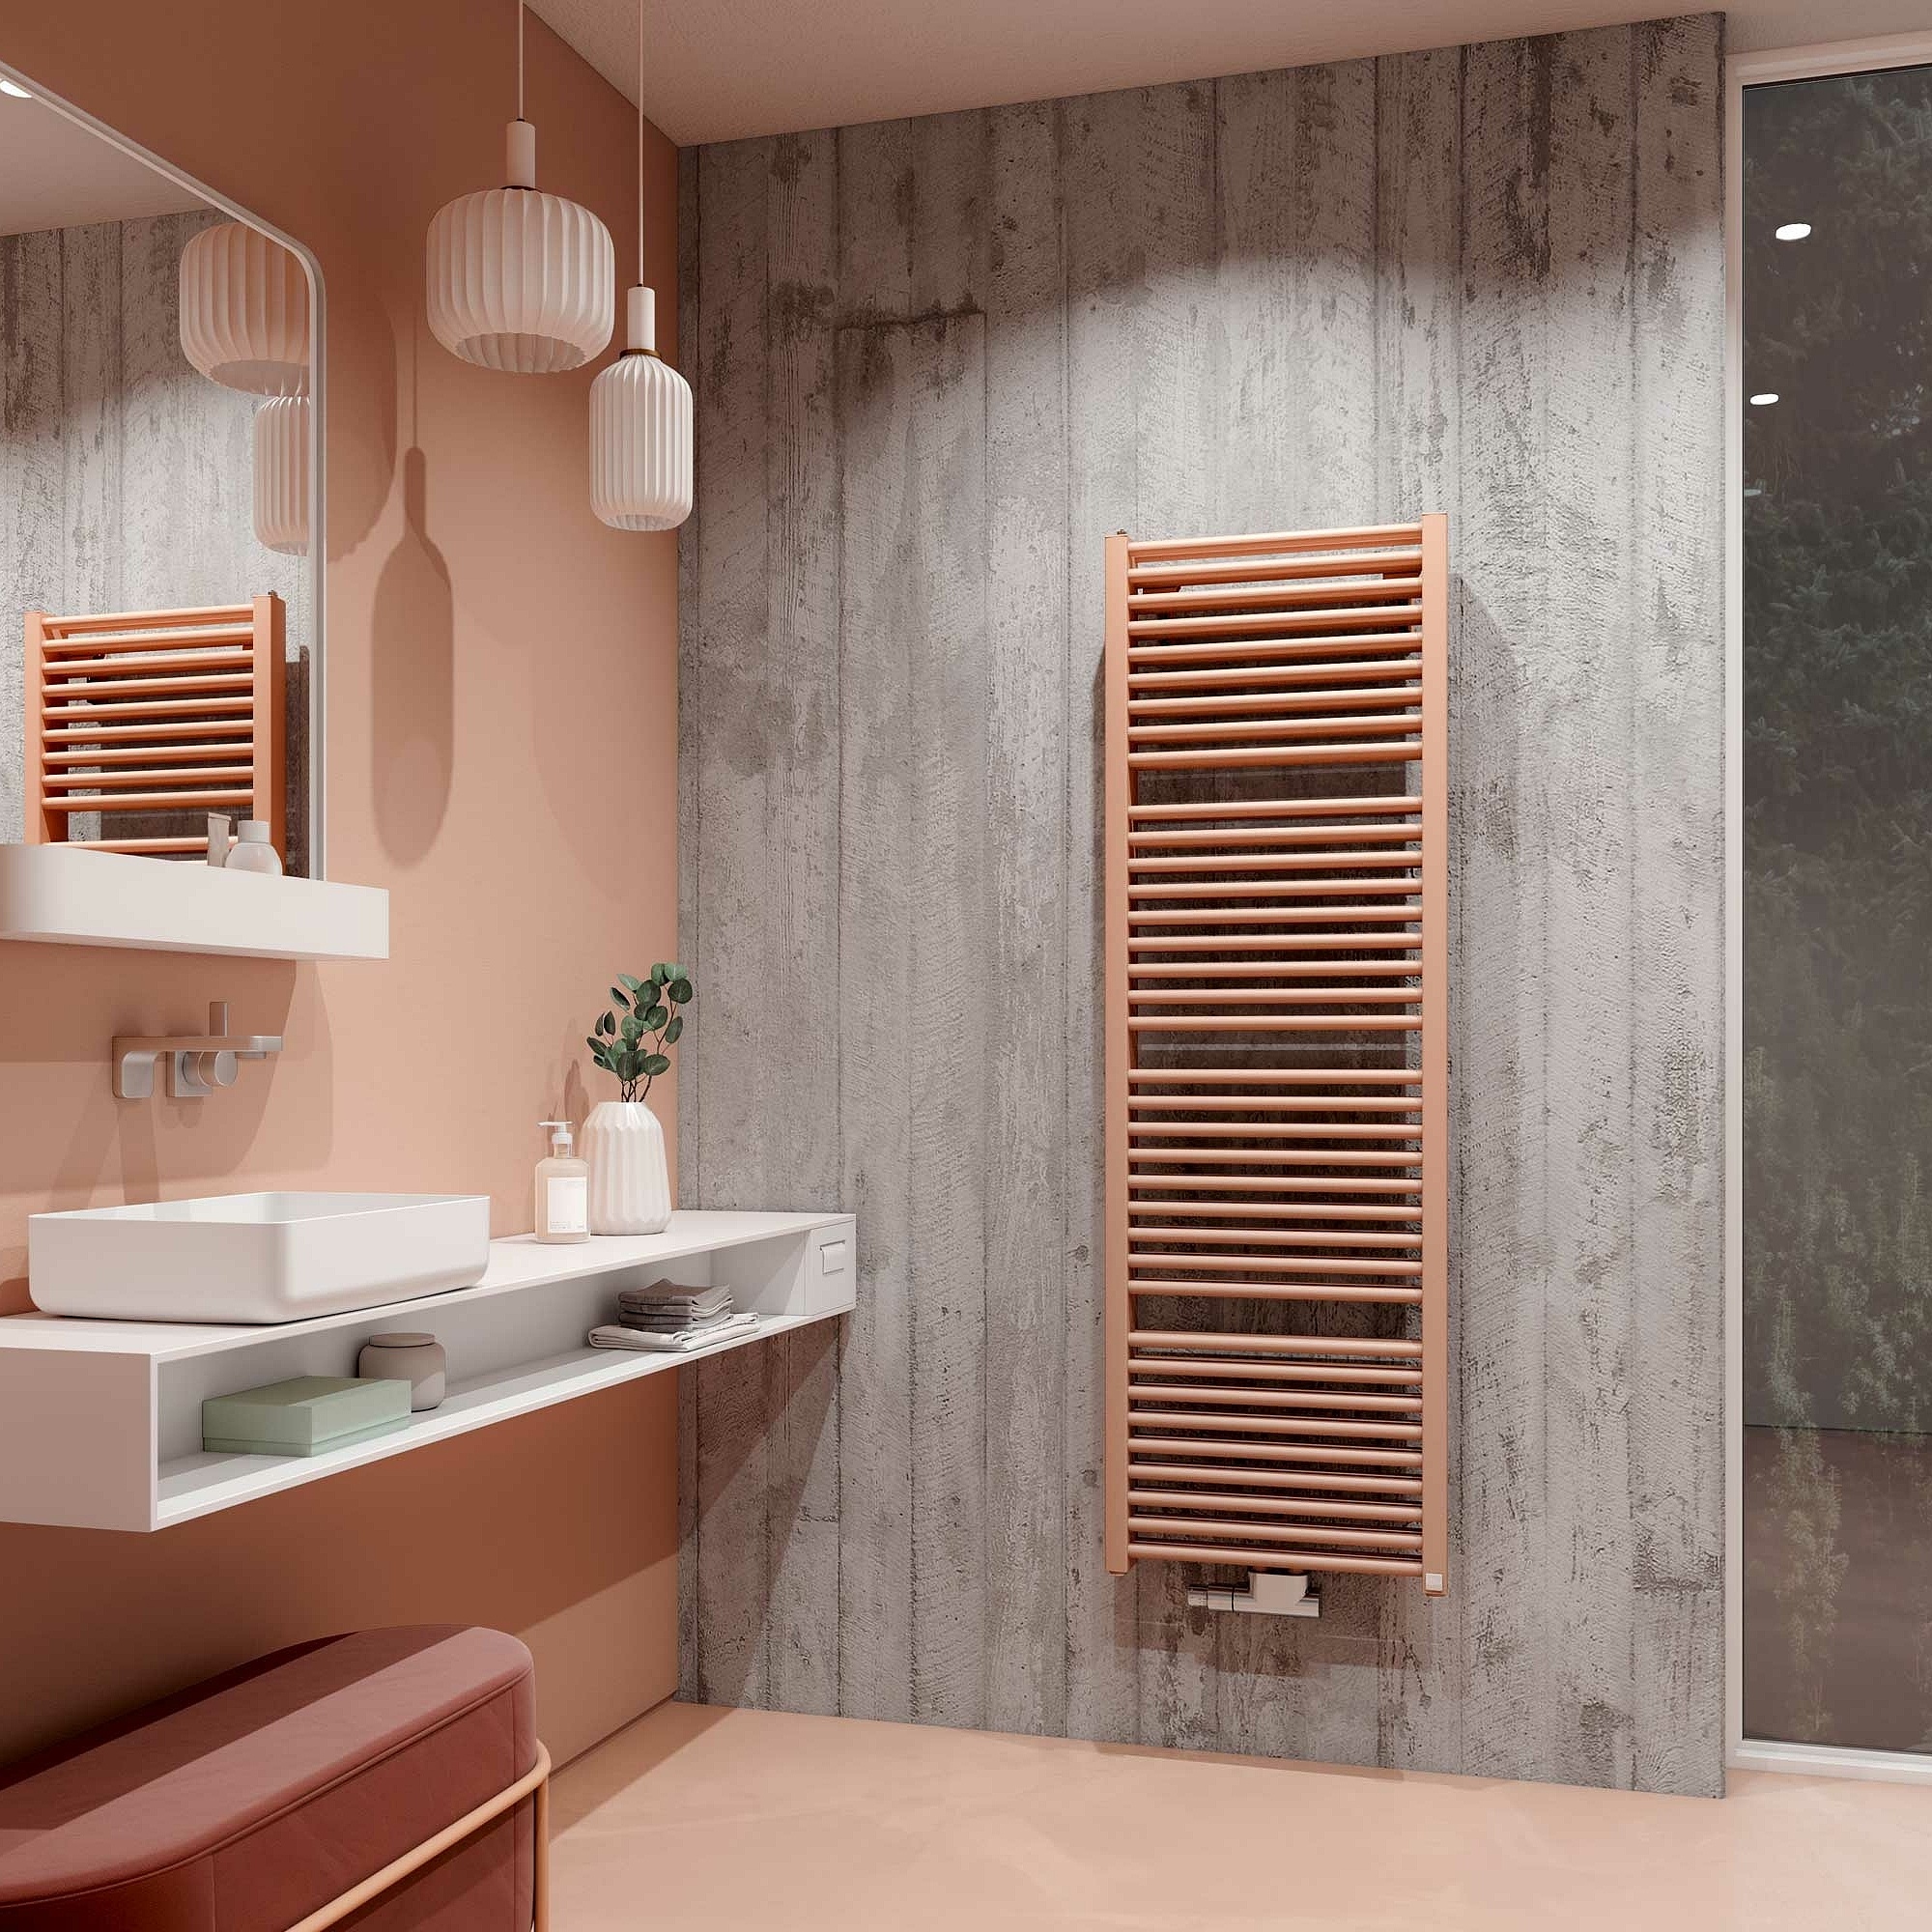 Designové a koupelnové otopné těleso Kermi Duett – klasický design koupelnového vytápění s dvojnásobným výkonem.